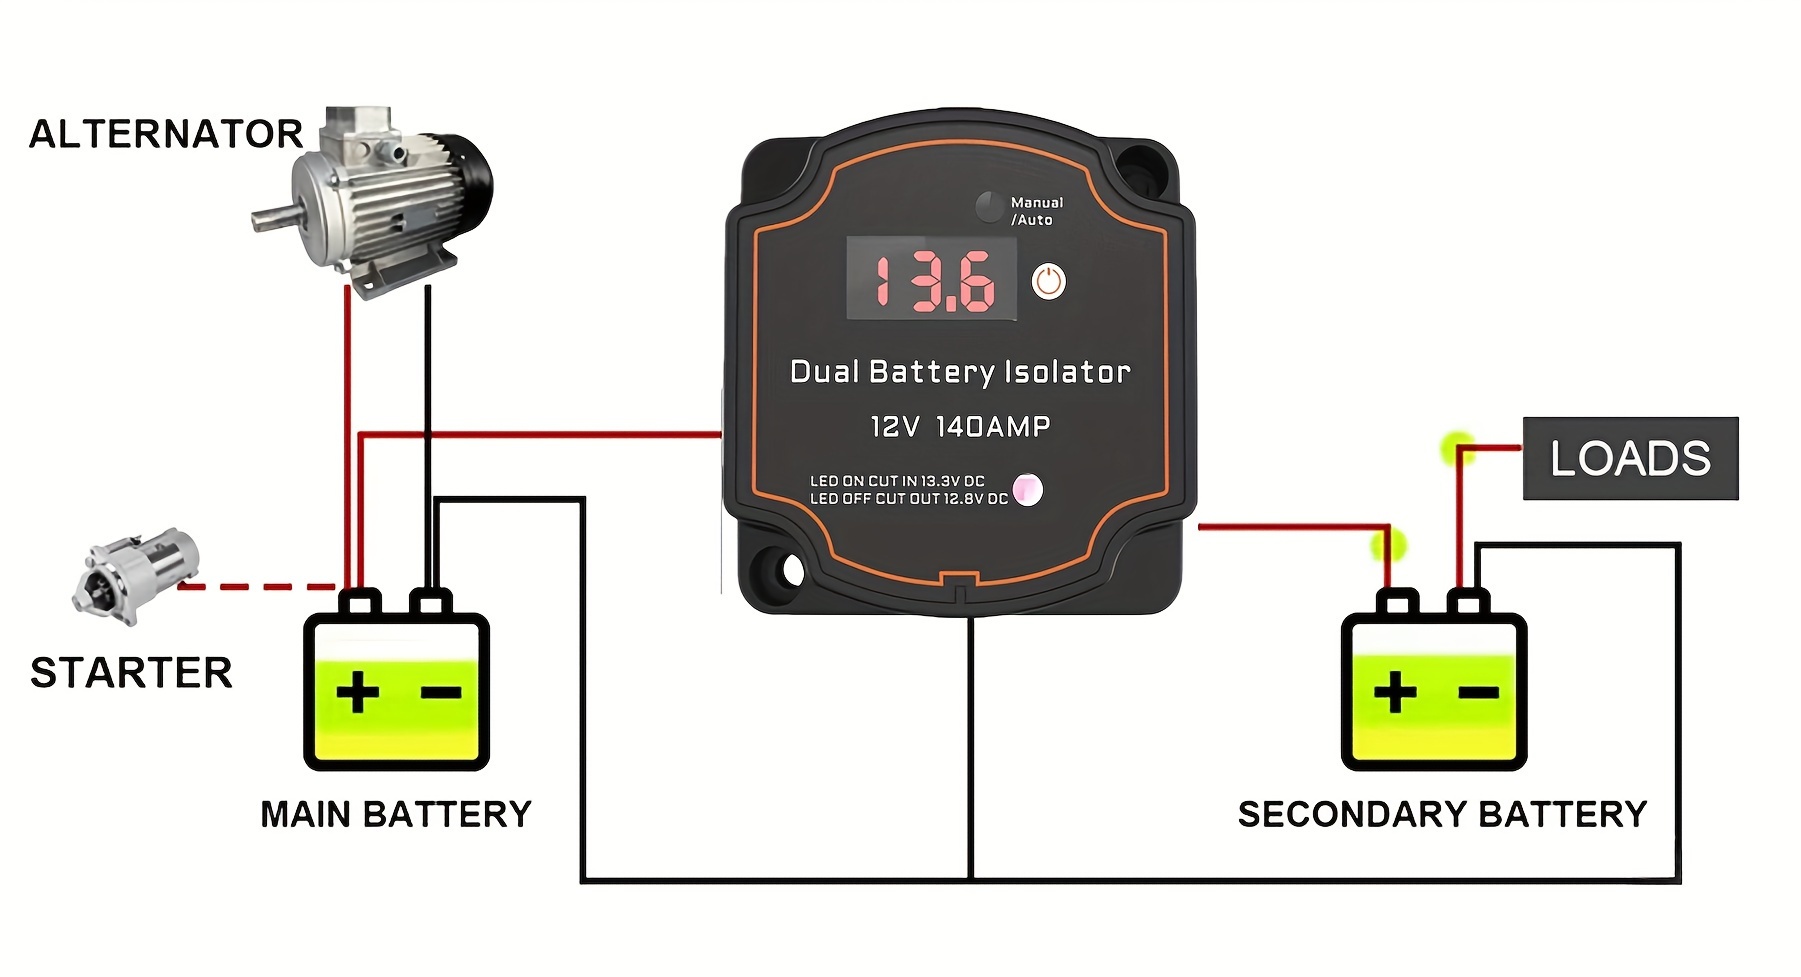 デュアルバッテリーアイソレーター 12V 140A 電圧表示付き スマート